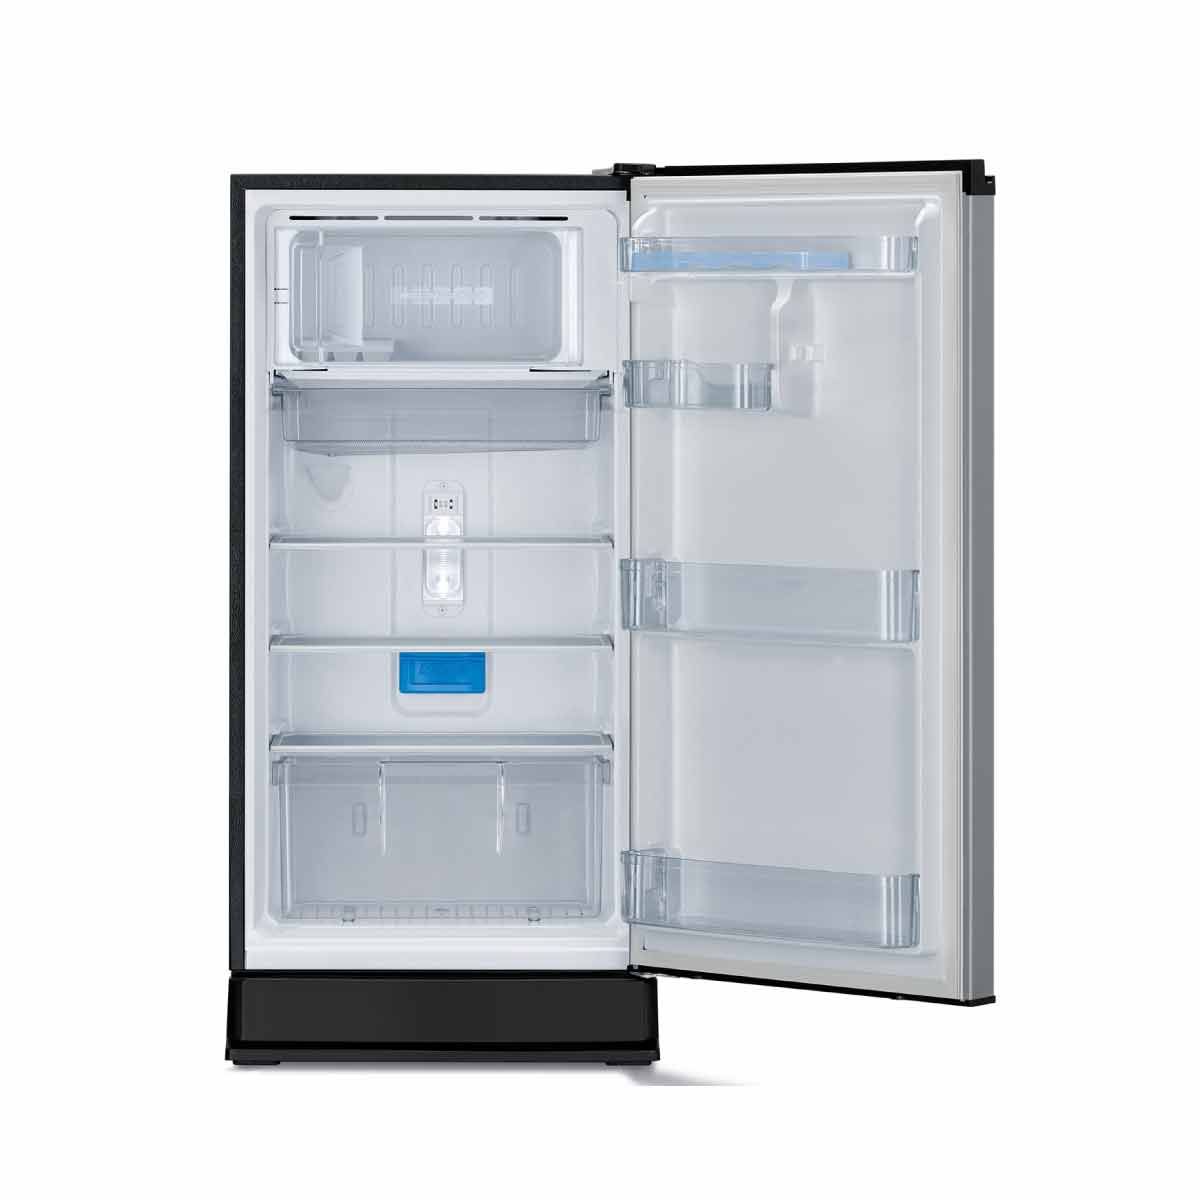 MITSUBISHI ELECTRIC ตู้เย็น1ประตูJ-SMART DEFROST 5.8Q สีเงิน รุ่นMR-17TJA